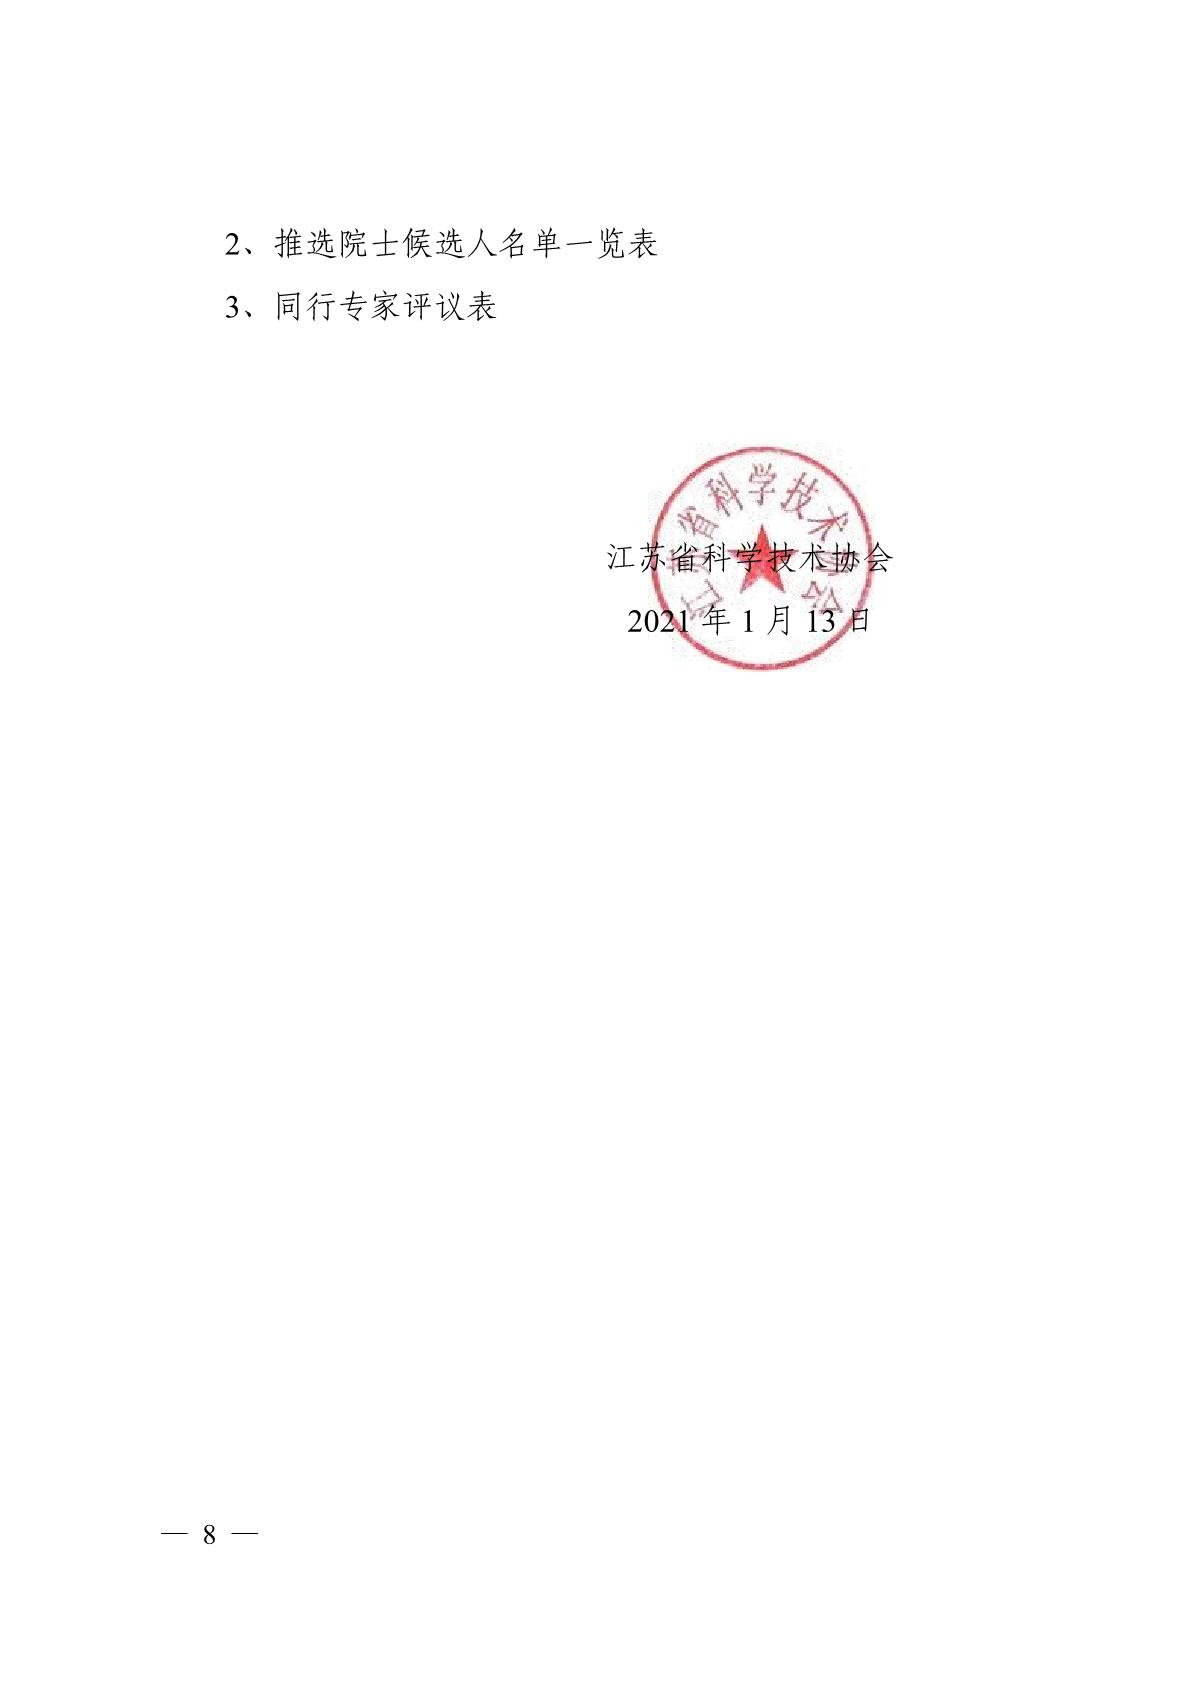 关于组织推选2021年中国工程院院士候选人的通知_8.JPG